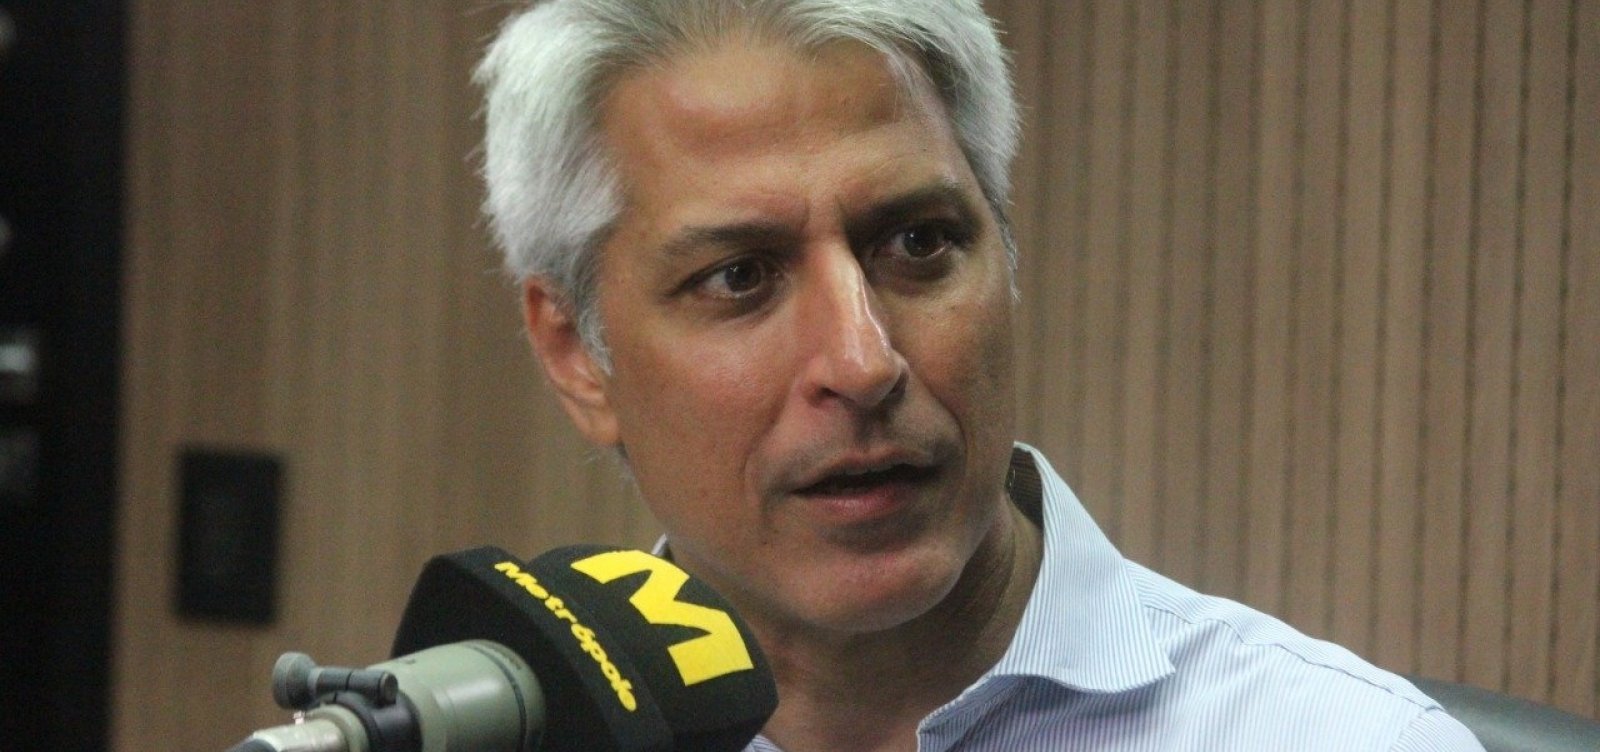 Alessandro Molon diz que ministro Ricardo Salles 'não está utilizando sua inteligência para o bem'